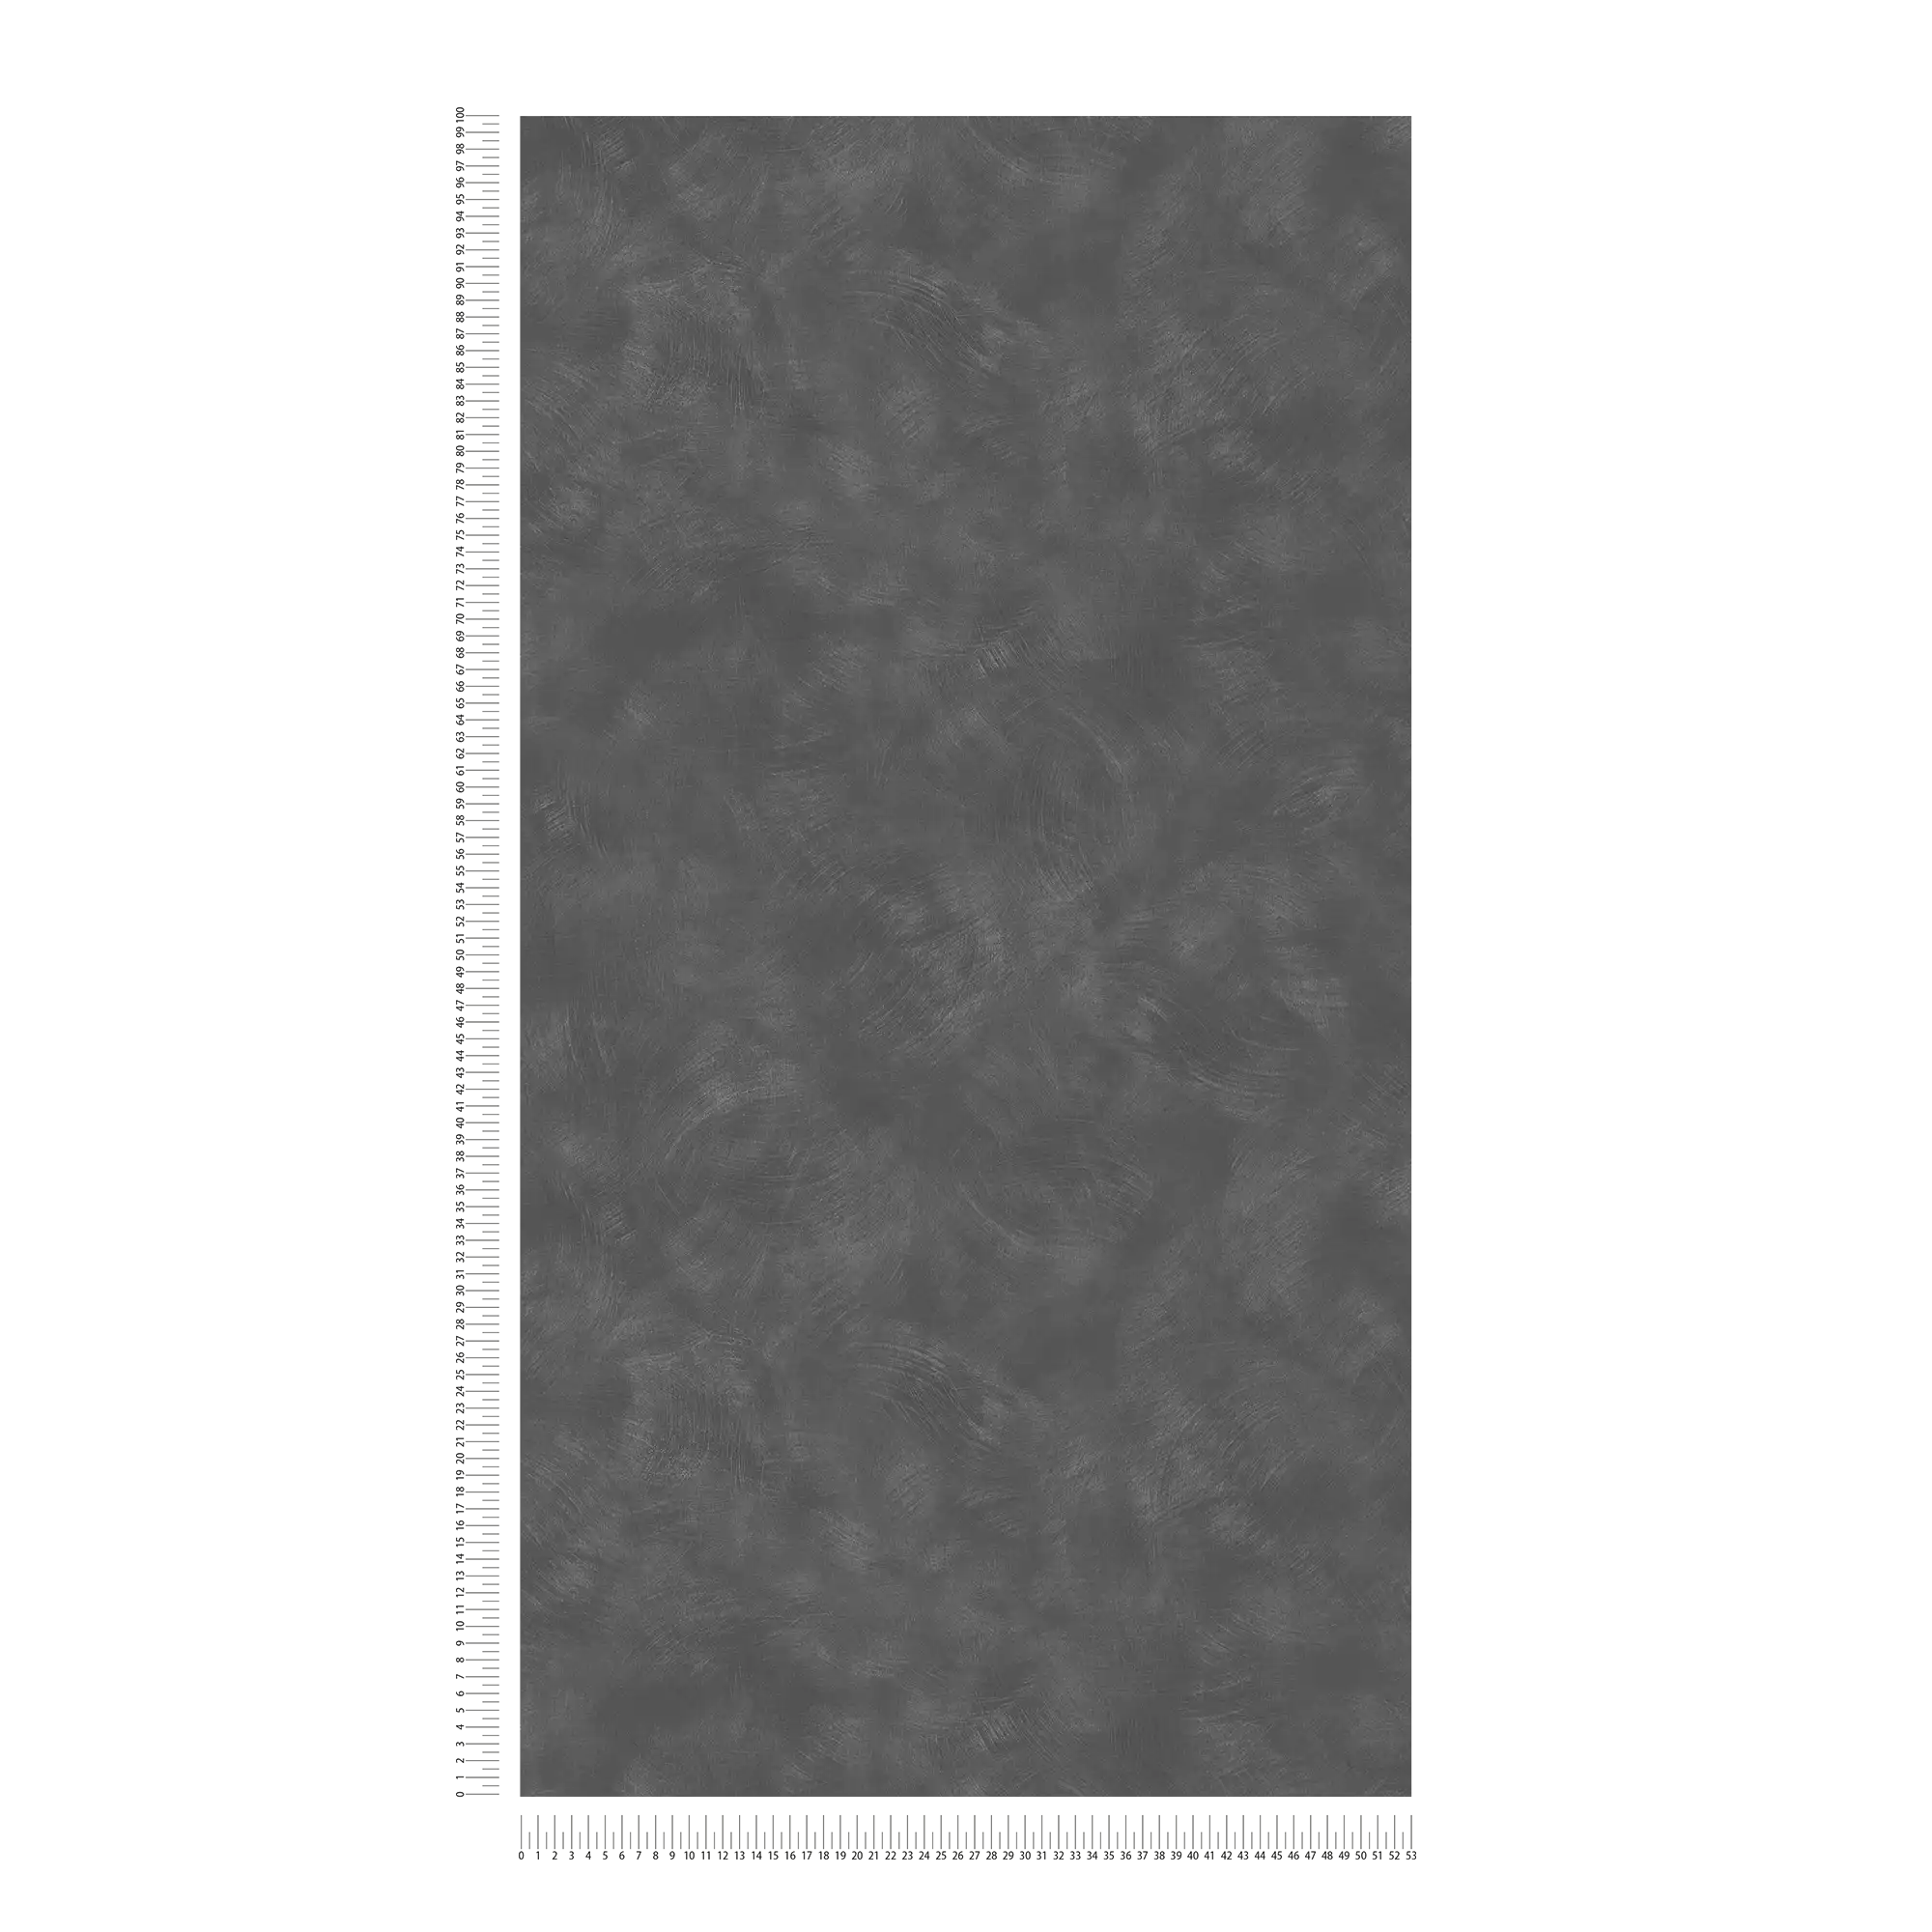             Carta da parati antracite con aspetto a pannelli e texture pulibile - grigio
        